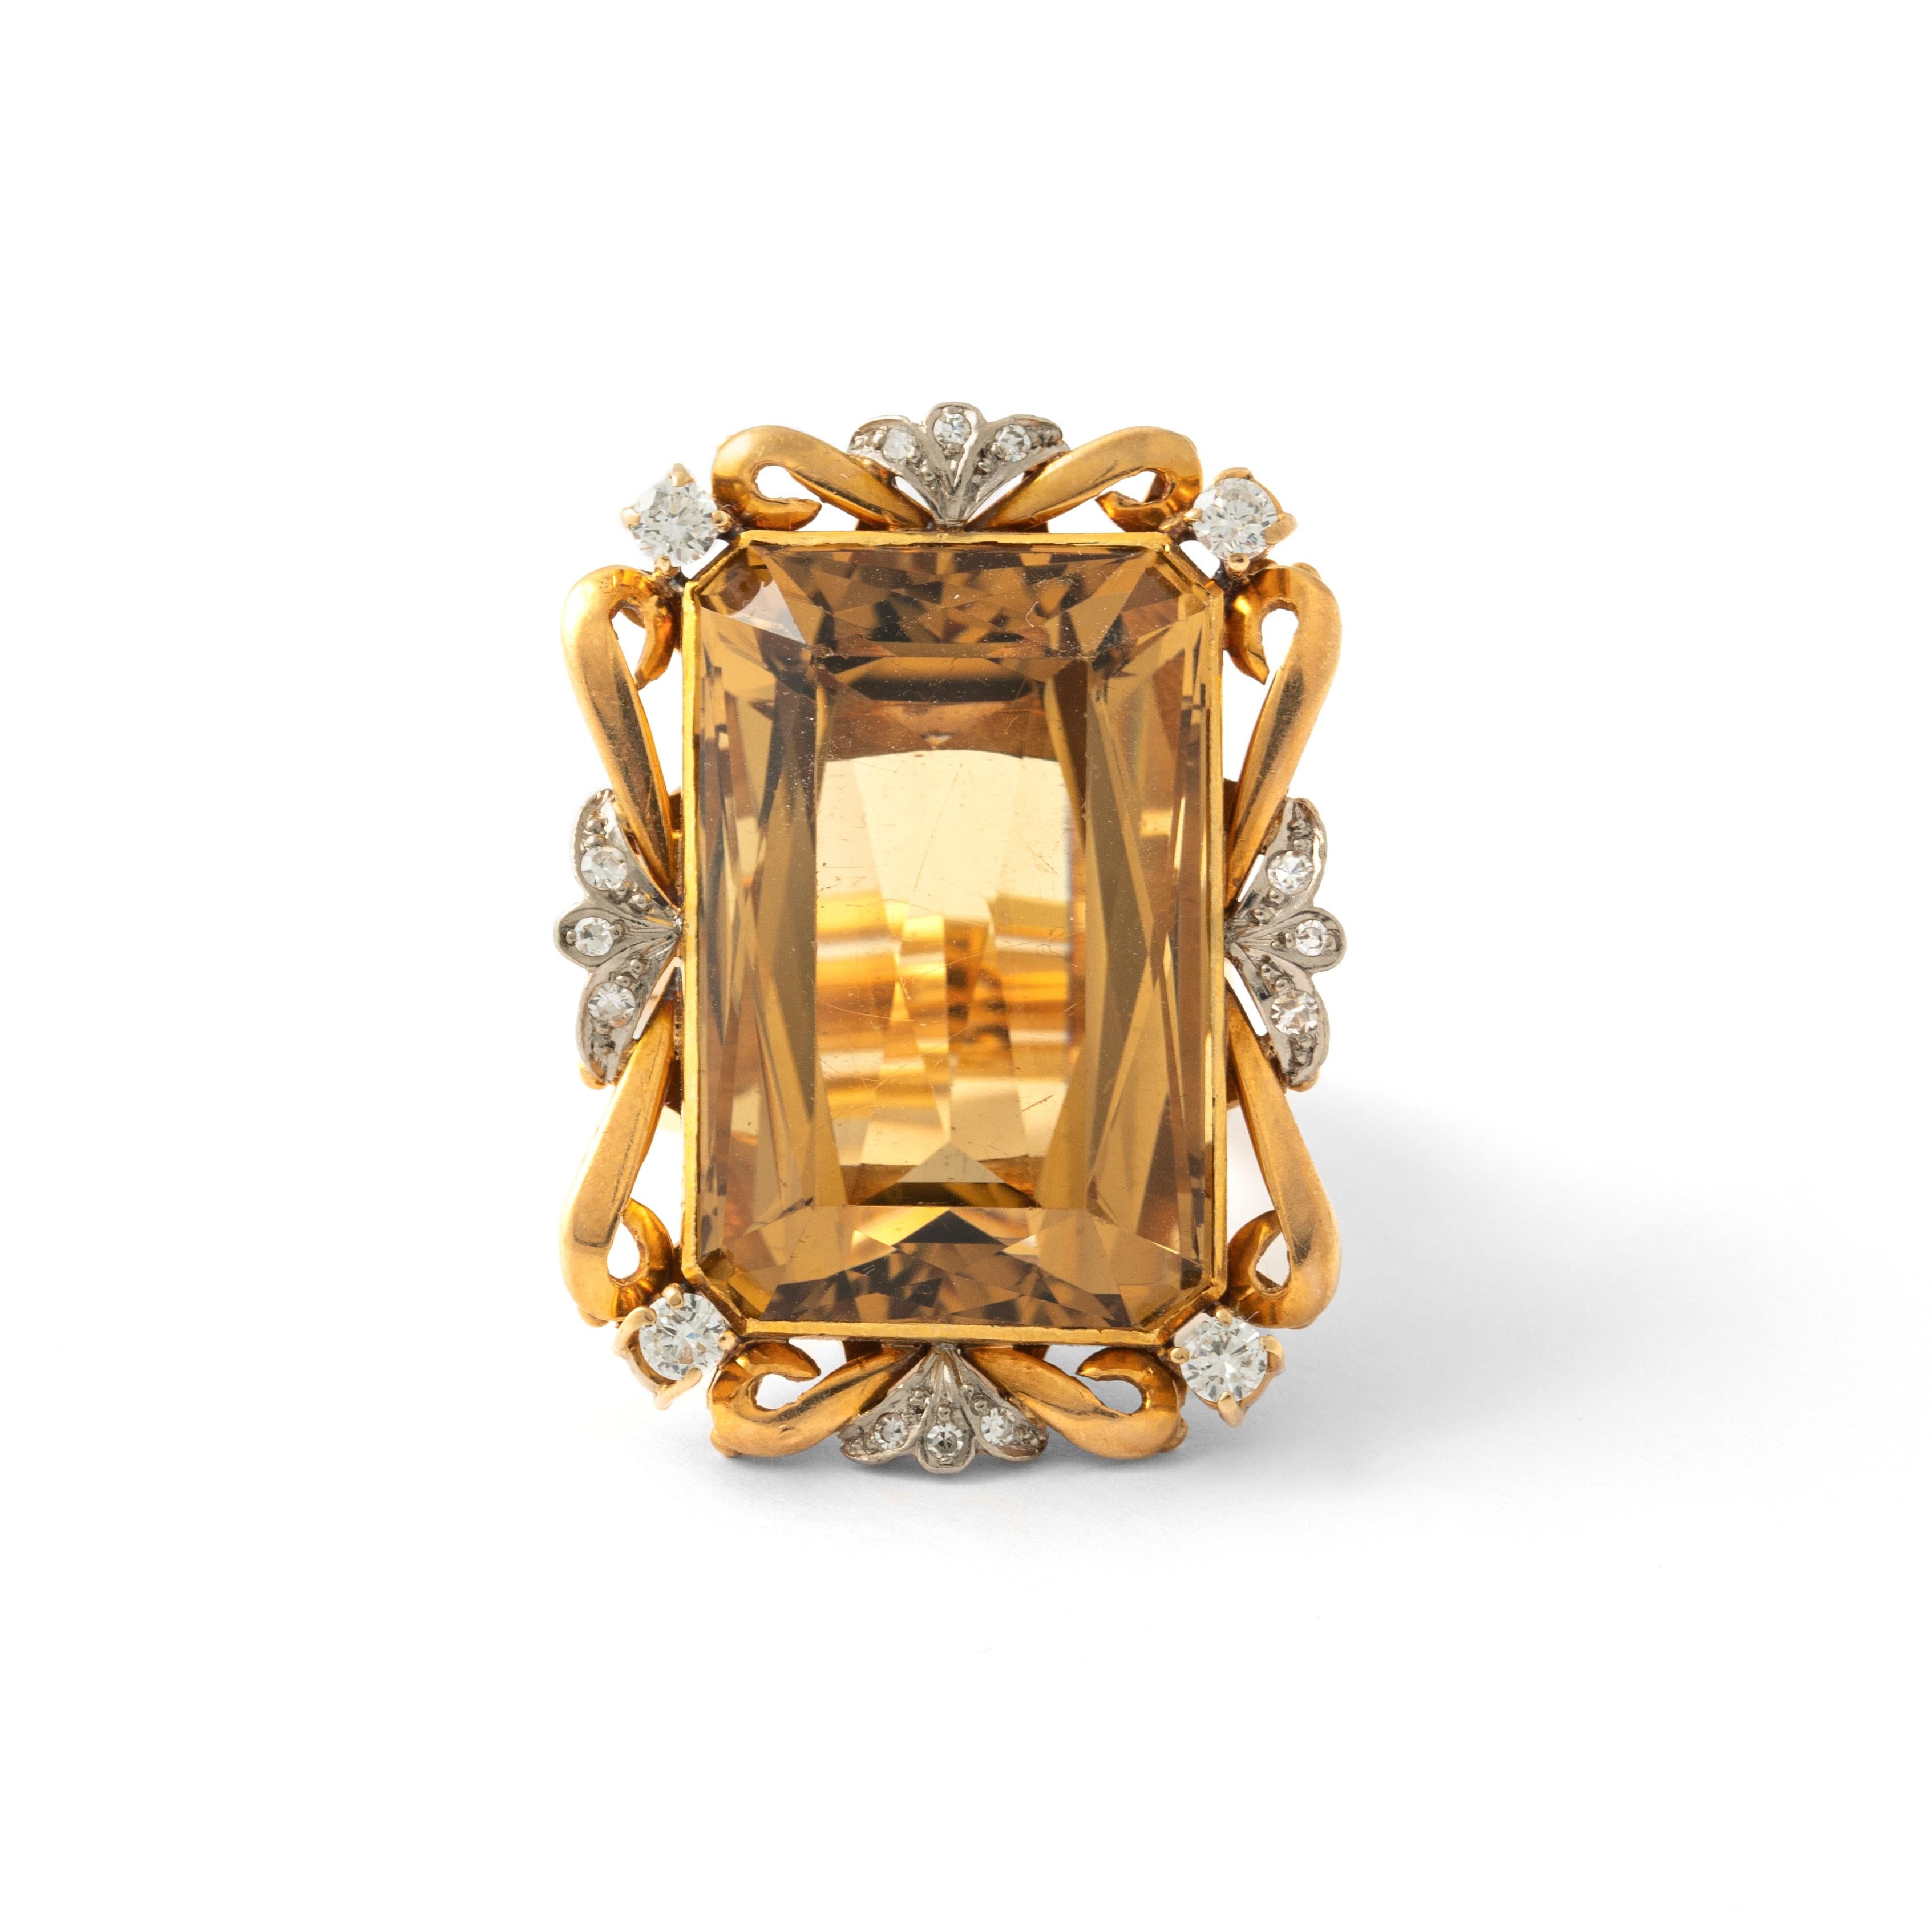 Beeindruckender Citrin-Diamant-Gelbgoldring.
CIRCA 1950.490
Gesamtlänge: ca. 3.60 Zentimeter.
Gesamtbreite: ca. 2,60 Zentimeter.

Ringgröße: 60 / 9.25 US
Gesamtgewicht: 32,53 Gramm.
